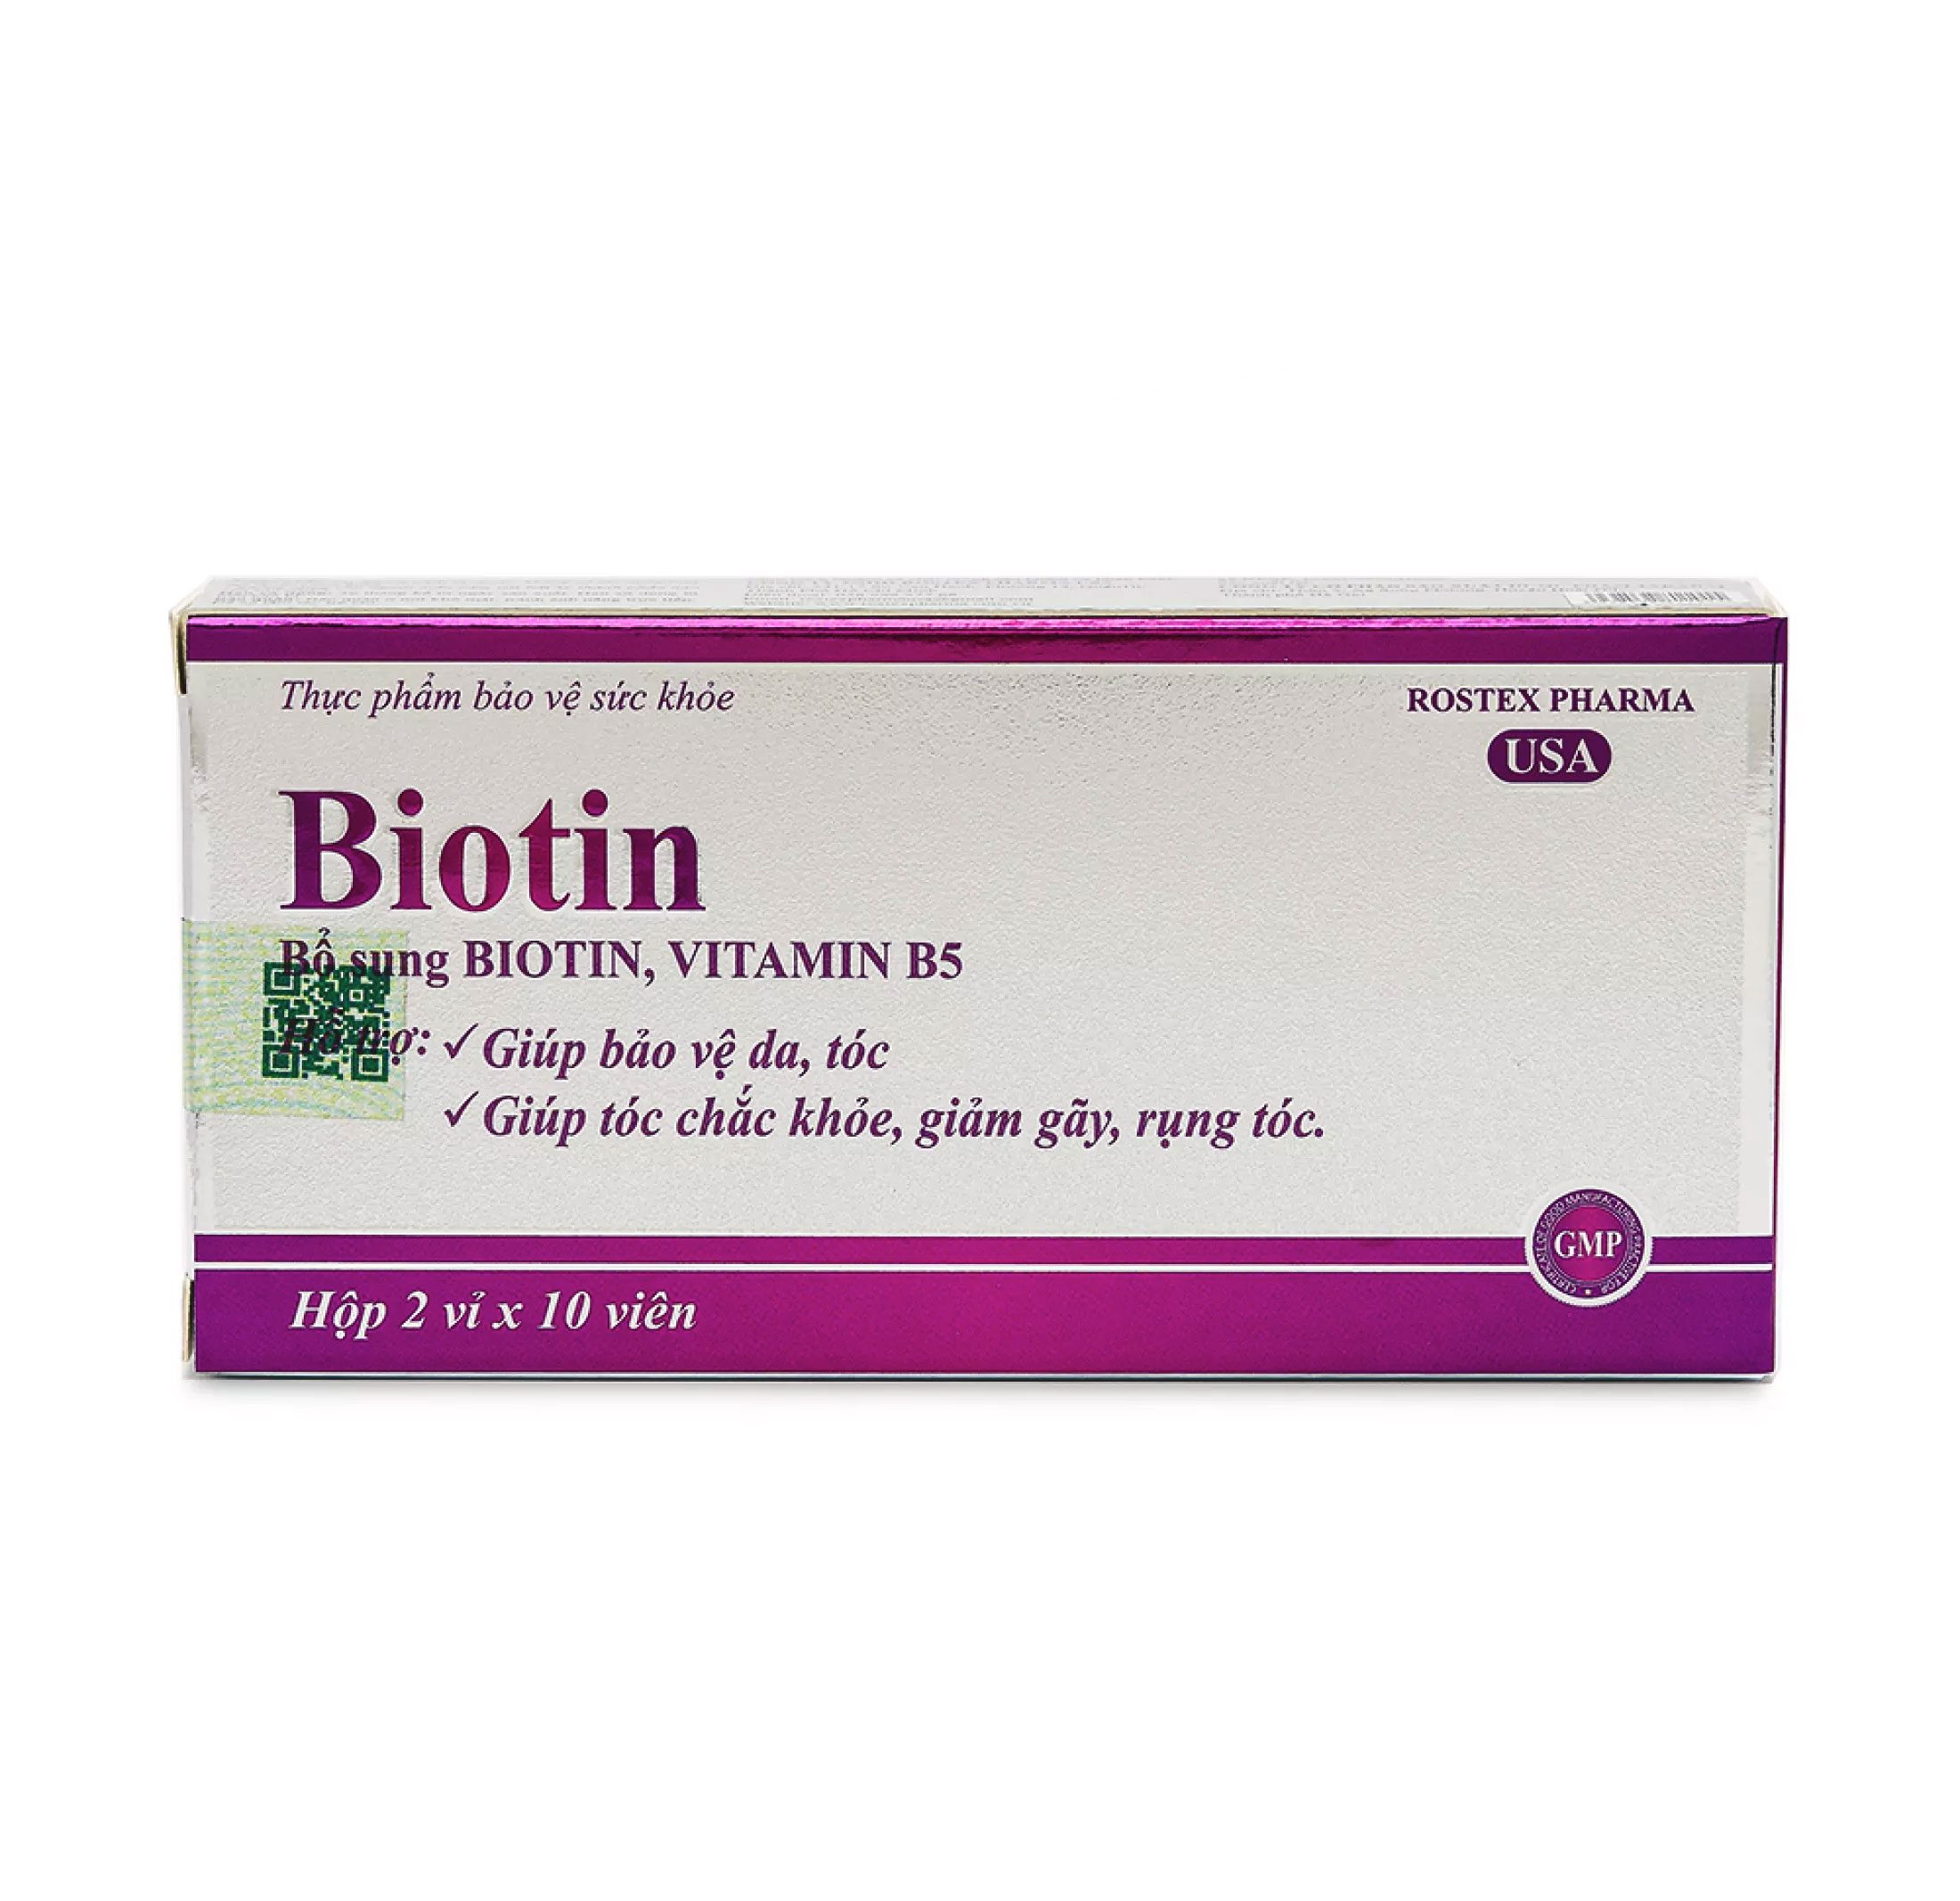 [HCM]Viên uống BIOTIN + vitamin B5 giúp giảm rụng tóc kích thích mọc tóc đẹp da Hộp 20 viên